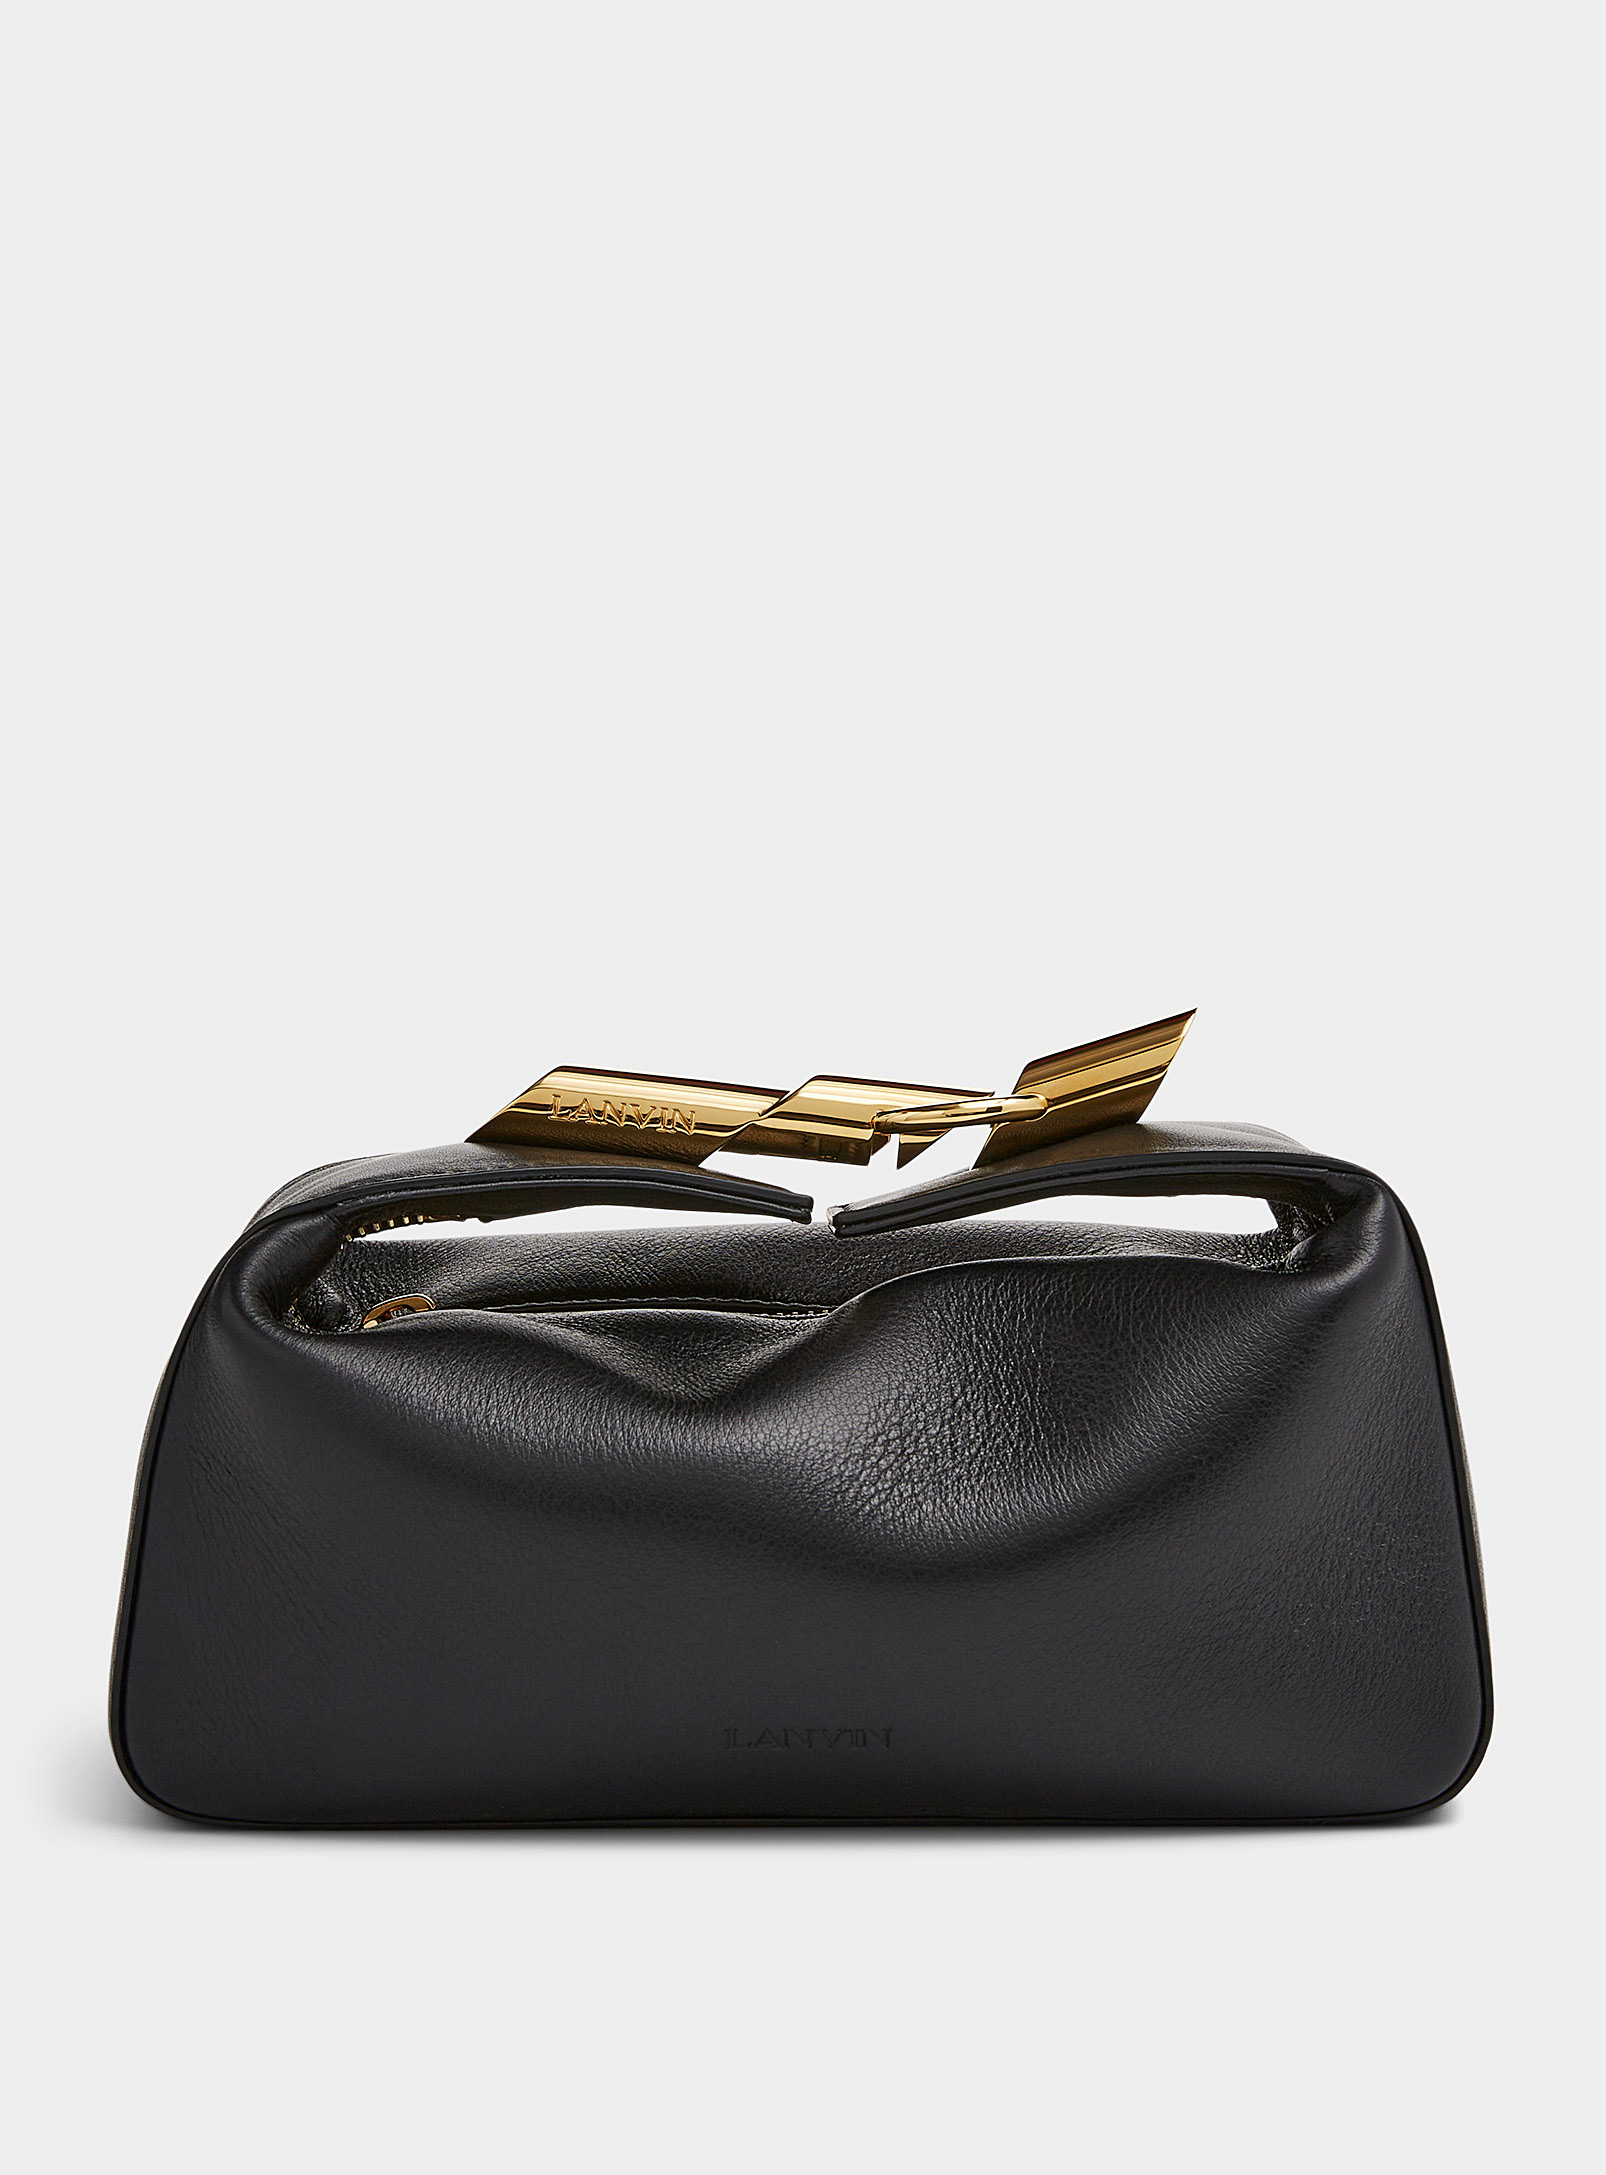 Lanvin - Women's Haute Séquence leather clutch